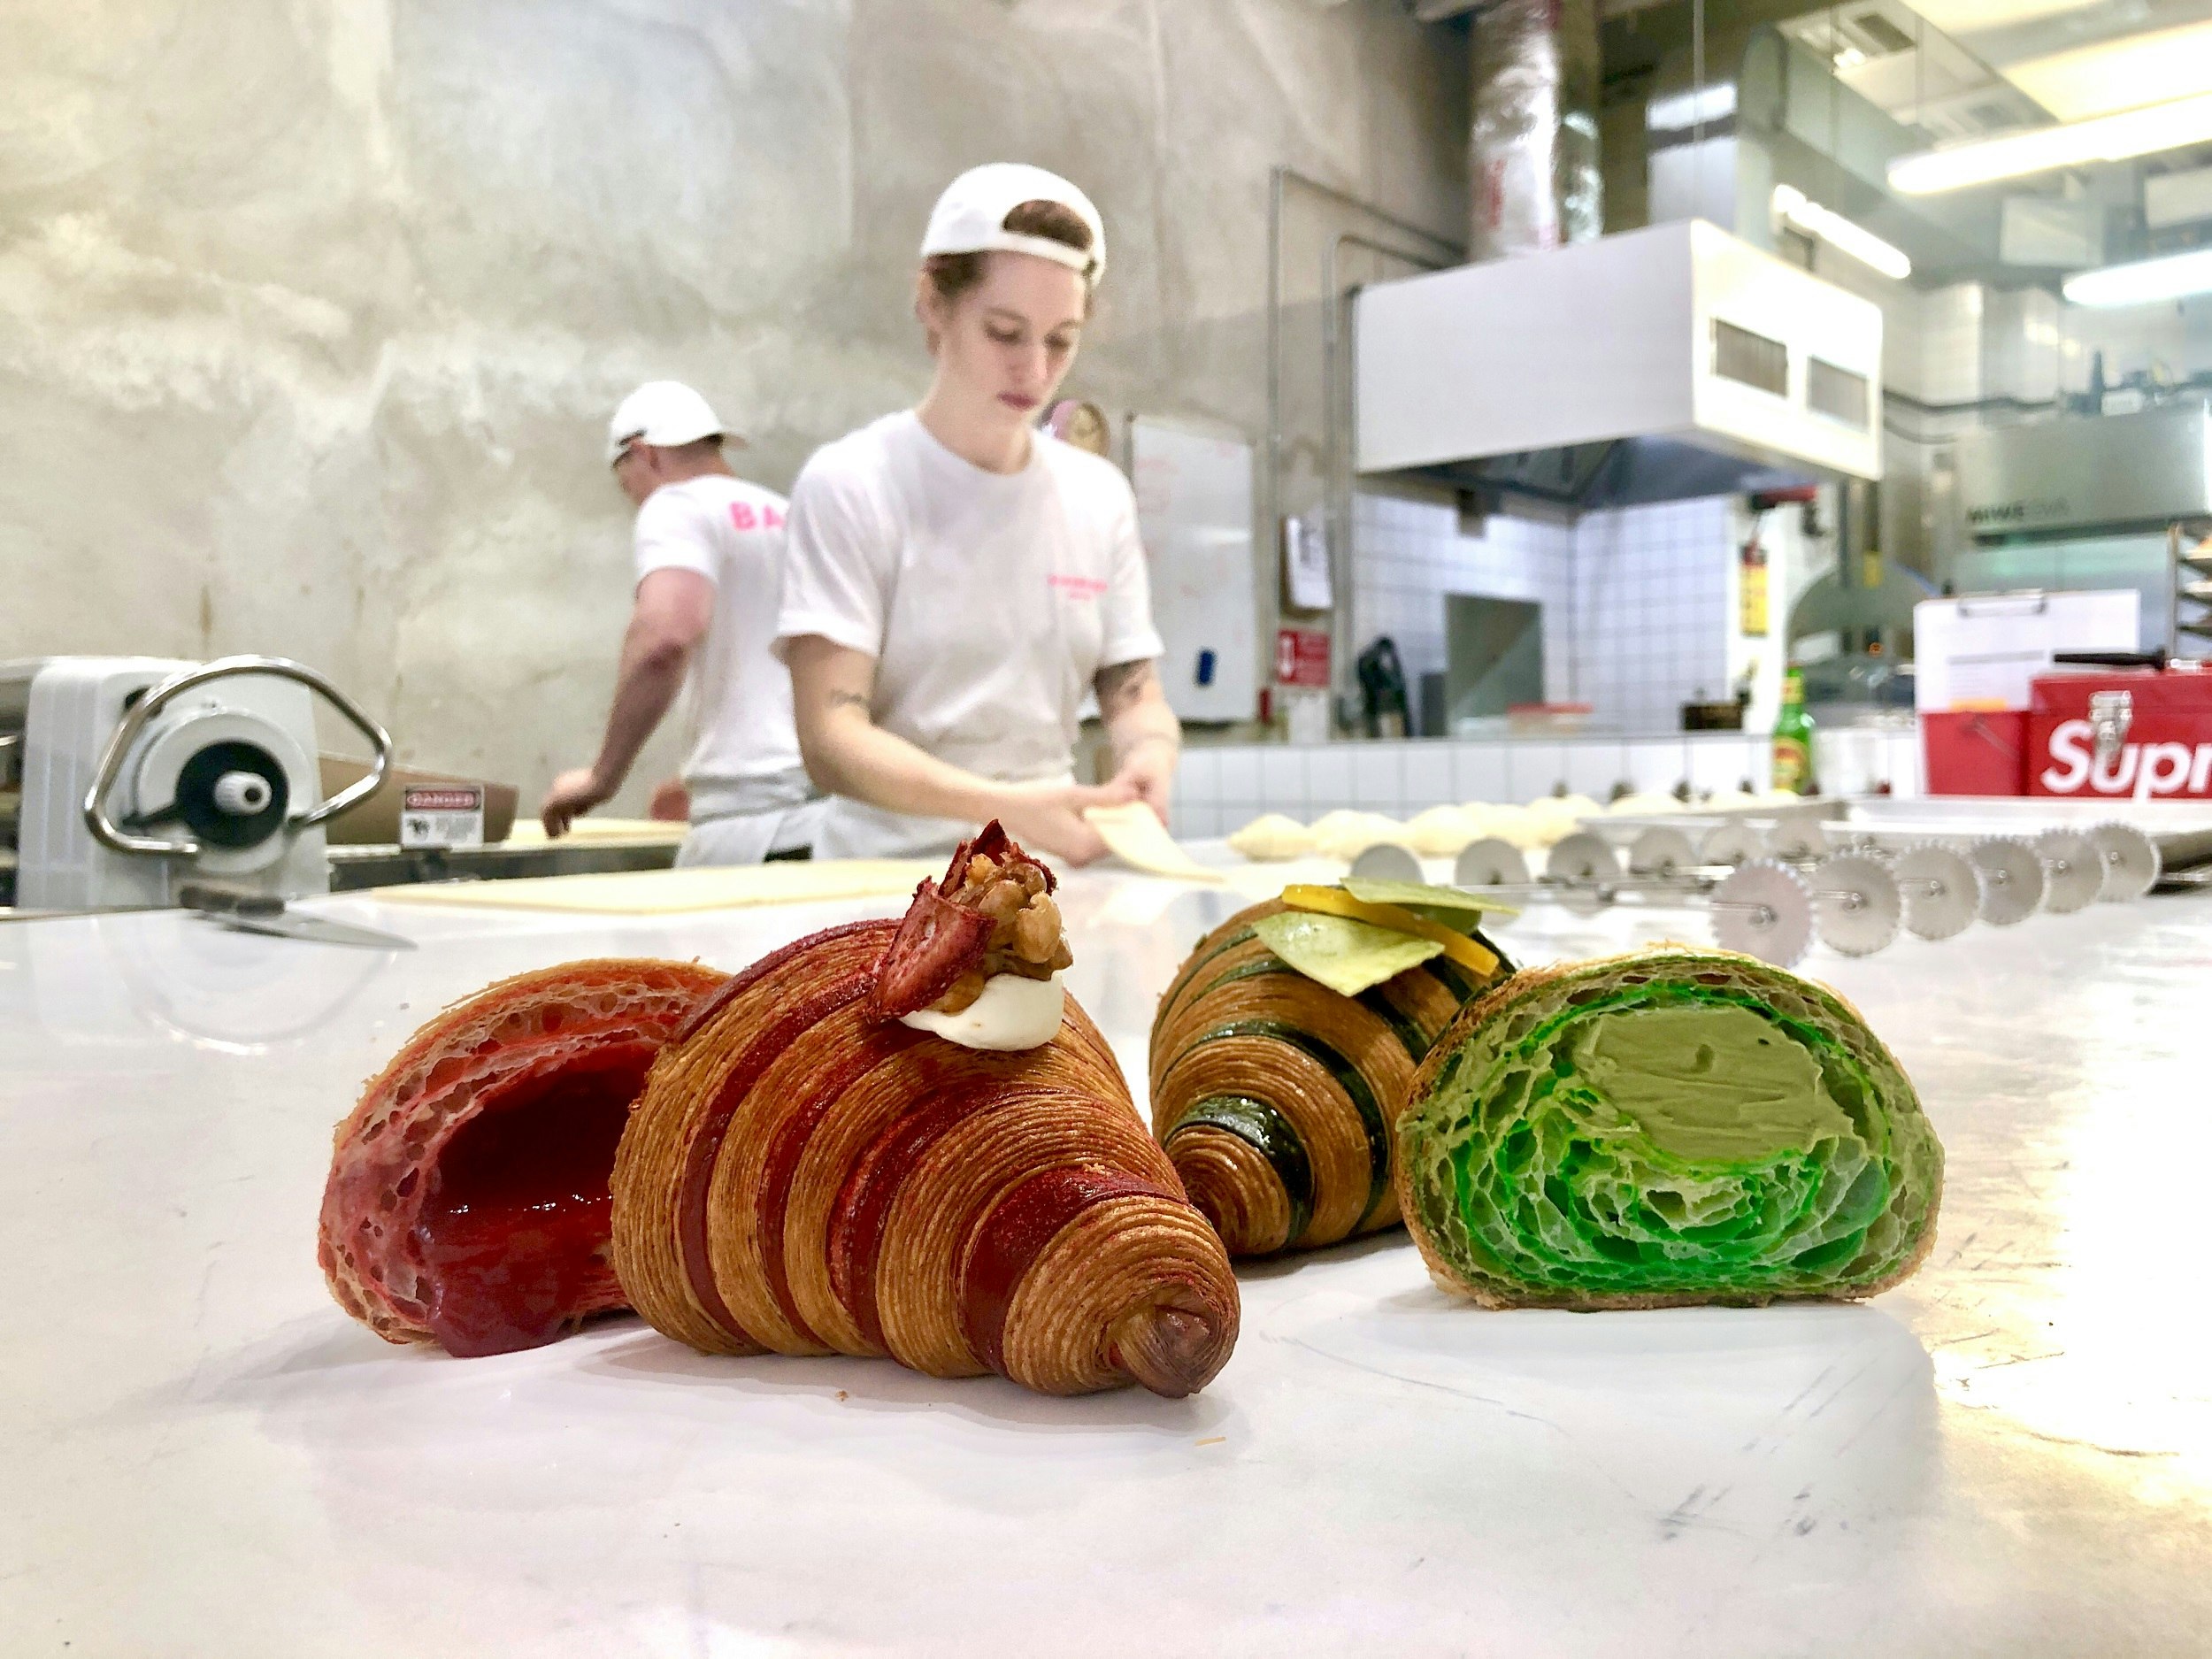 En närbild av två croissanter halverade.  Den ena har en röd vätska inuti, den andra är grön bakelse.  Två konditorer som bär vita t-shirts och hattar arbetar i bakgrunden